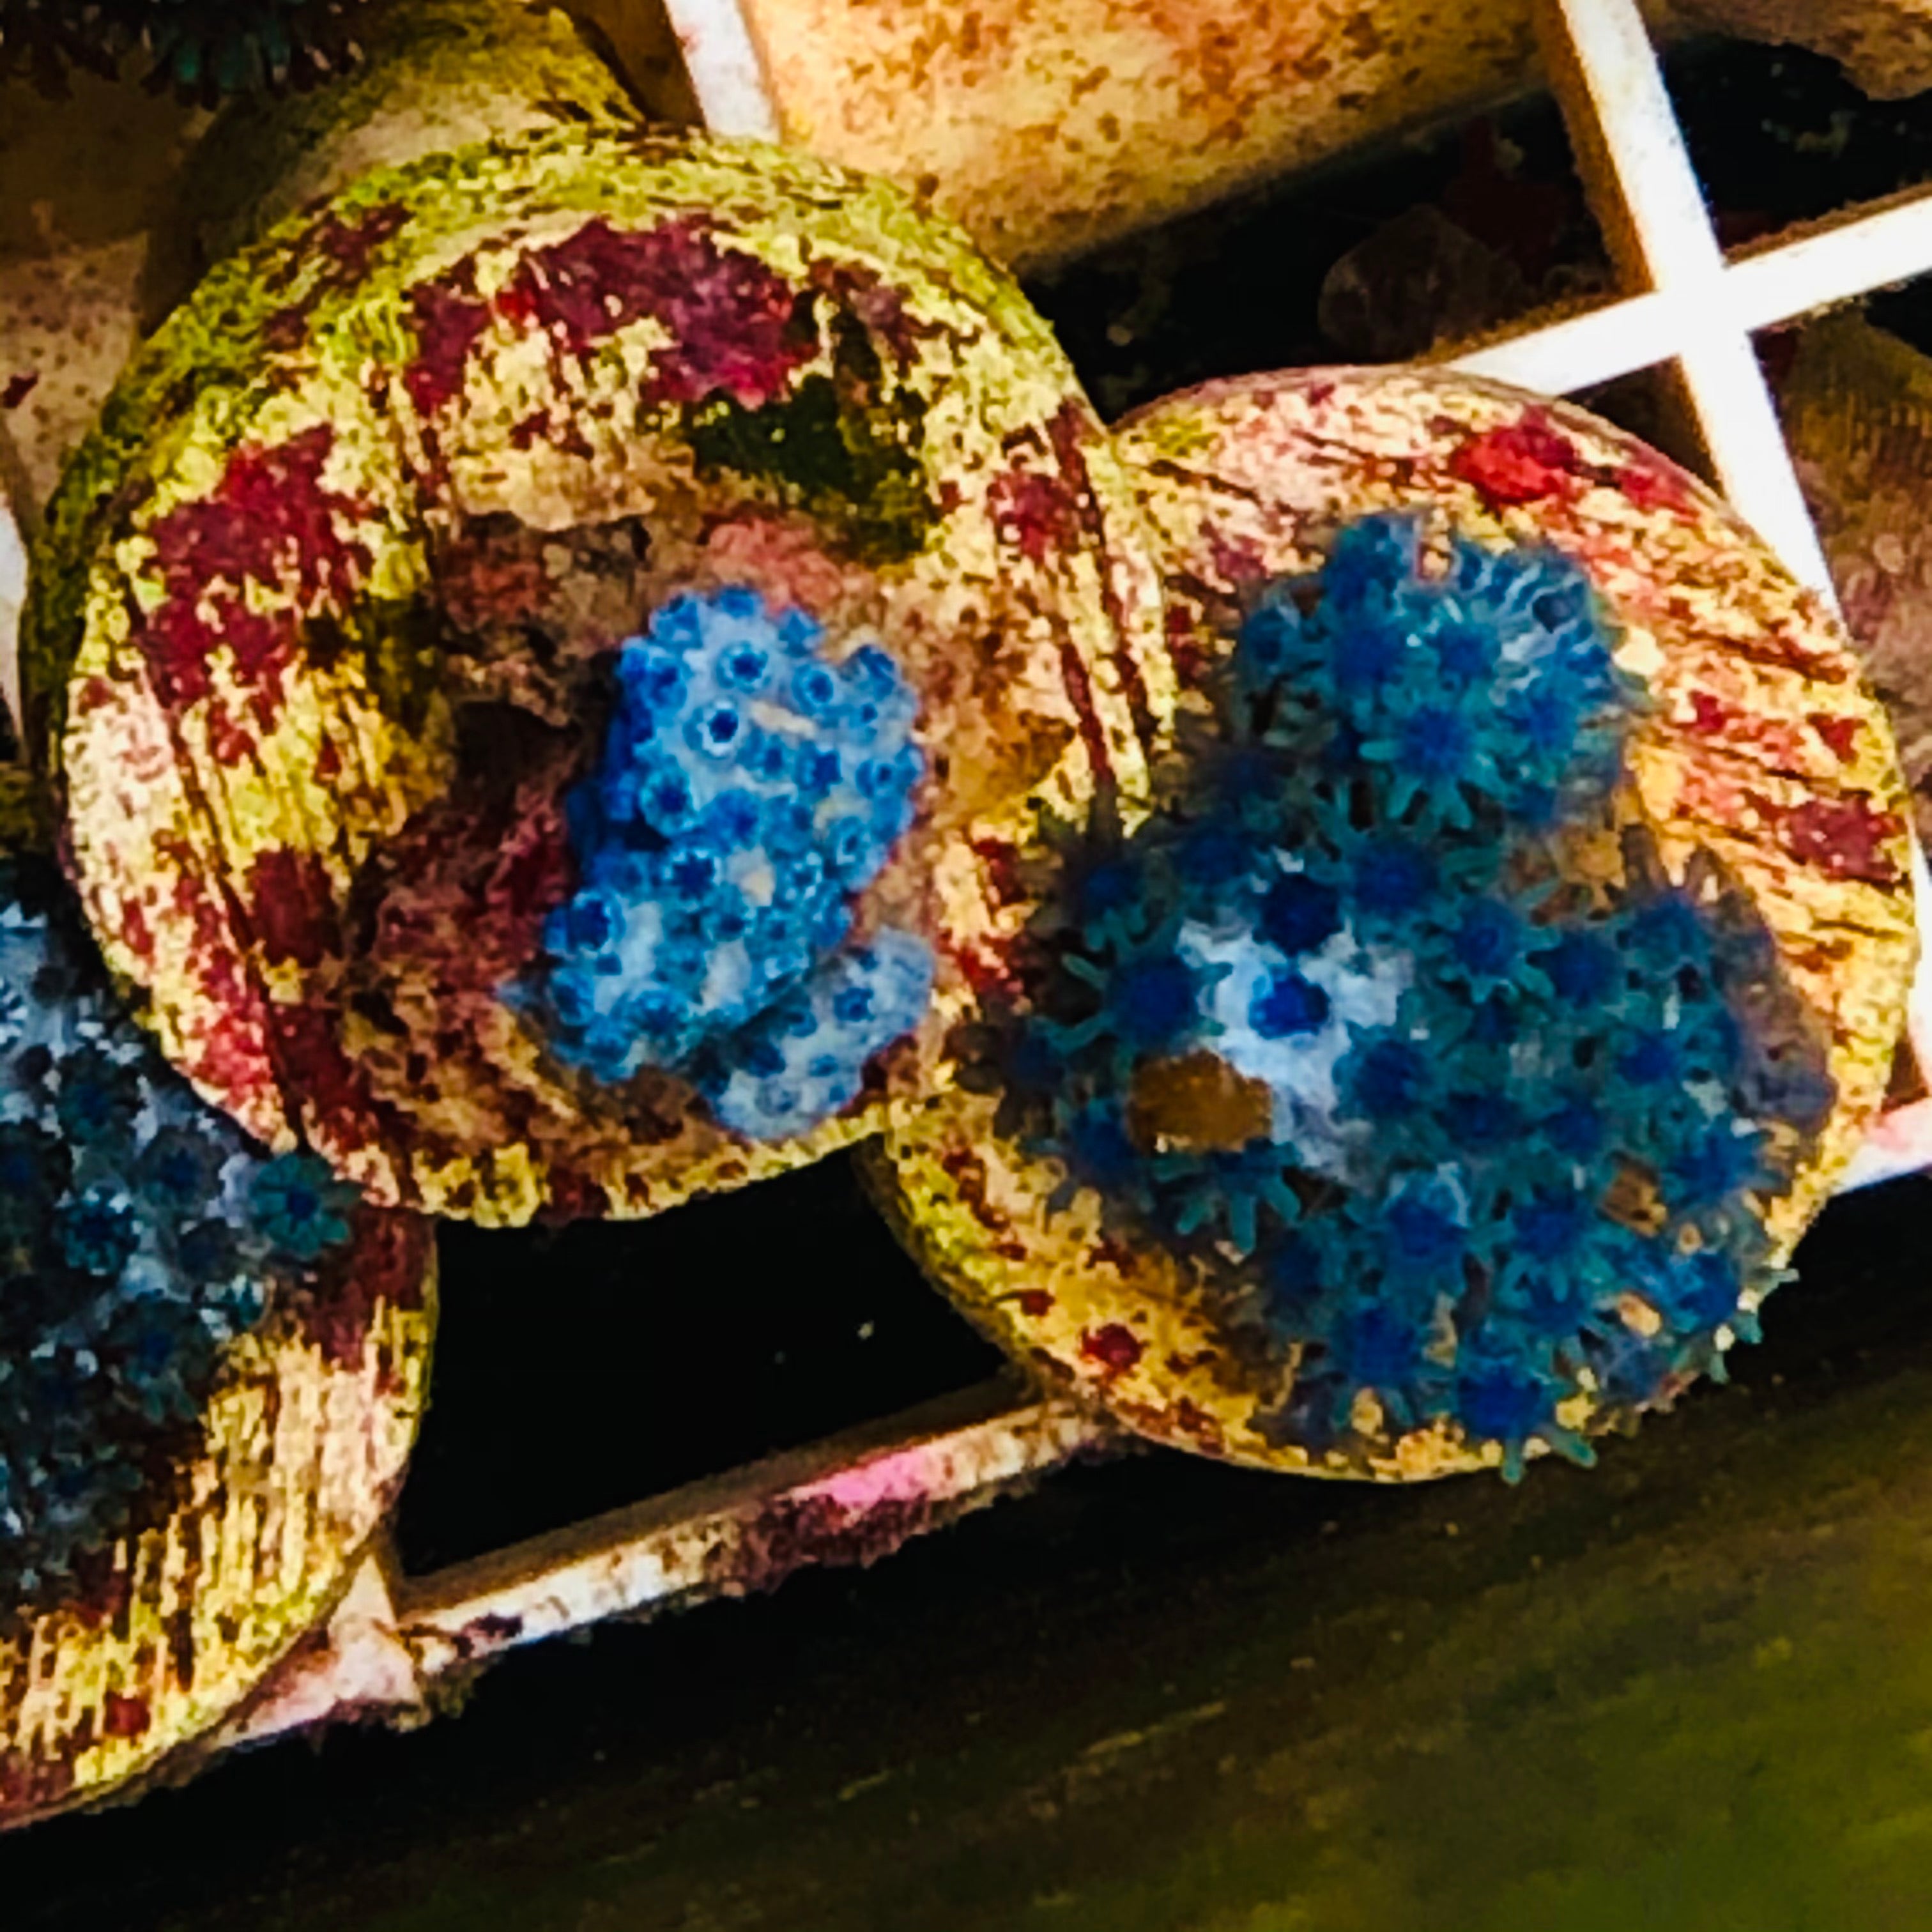 Blue Sympodium Soft Coral-Frag (Very Popular)